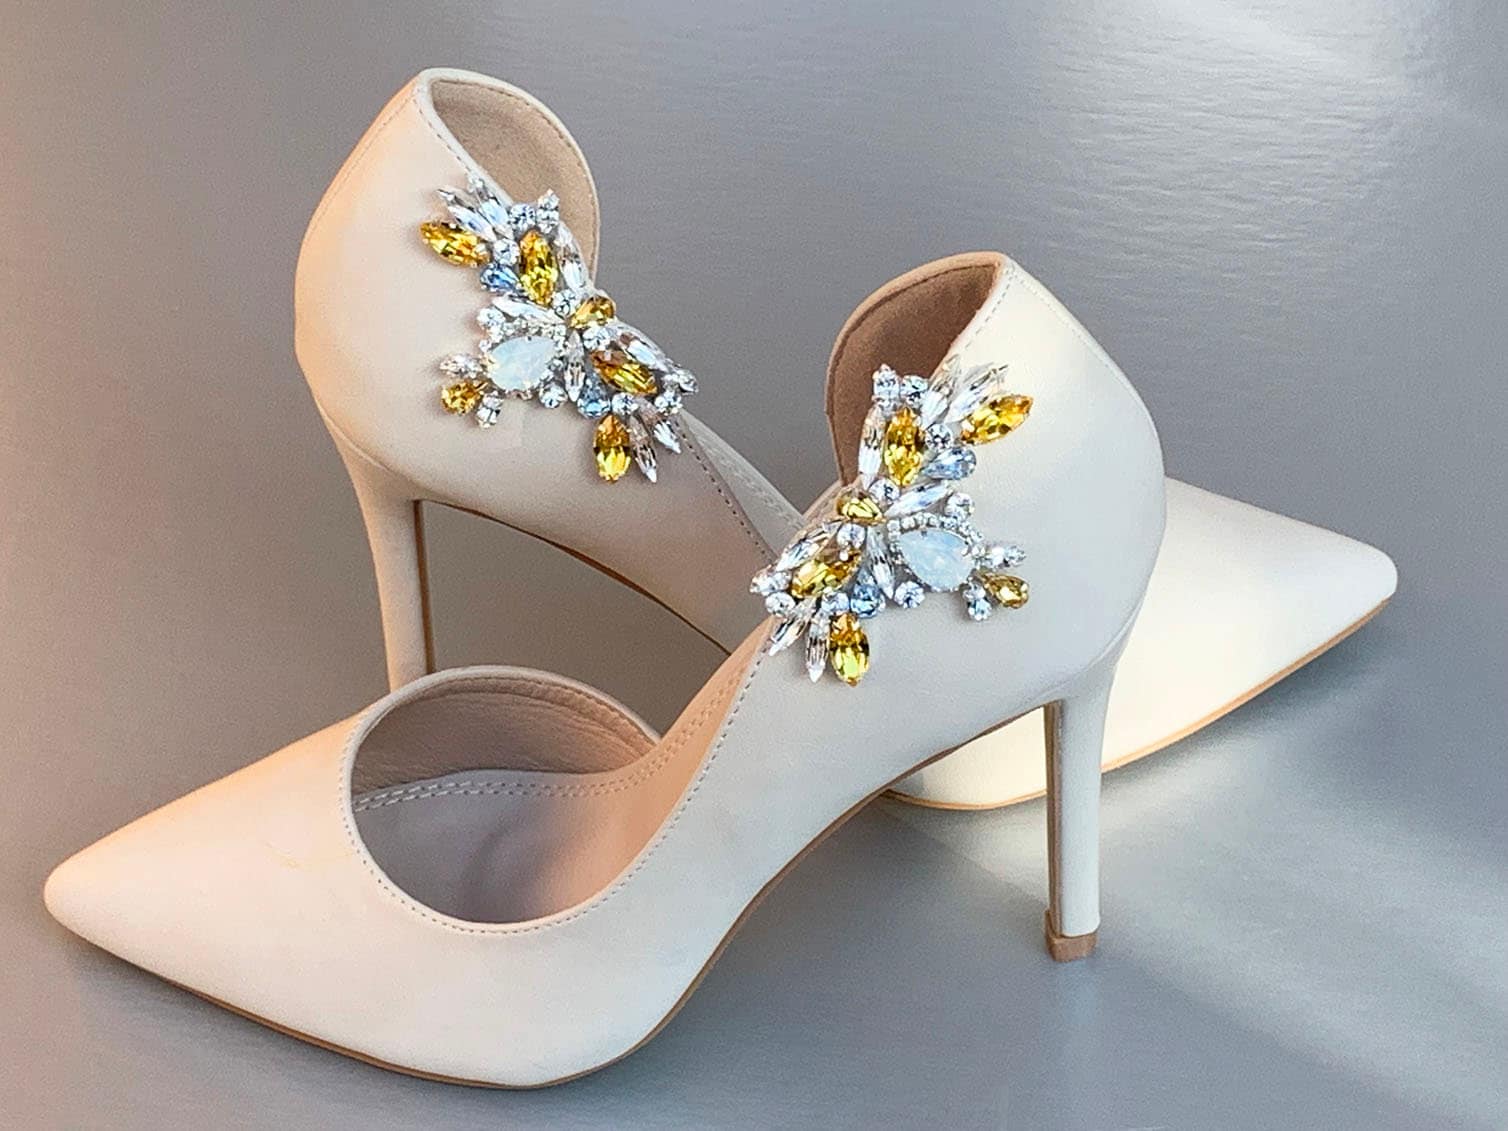 Champagne Shoe clips, Bridal shoe clips, Premium European